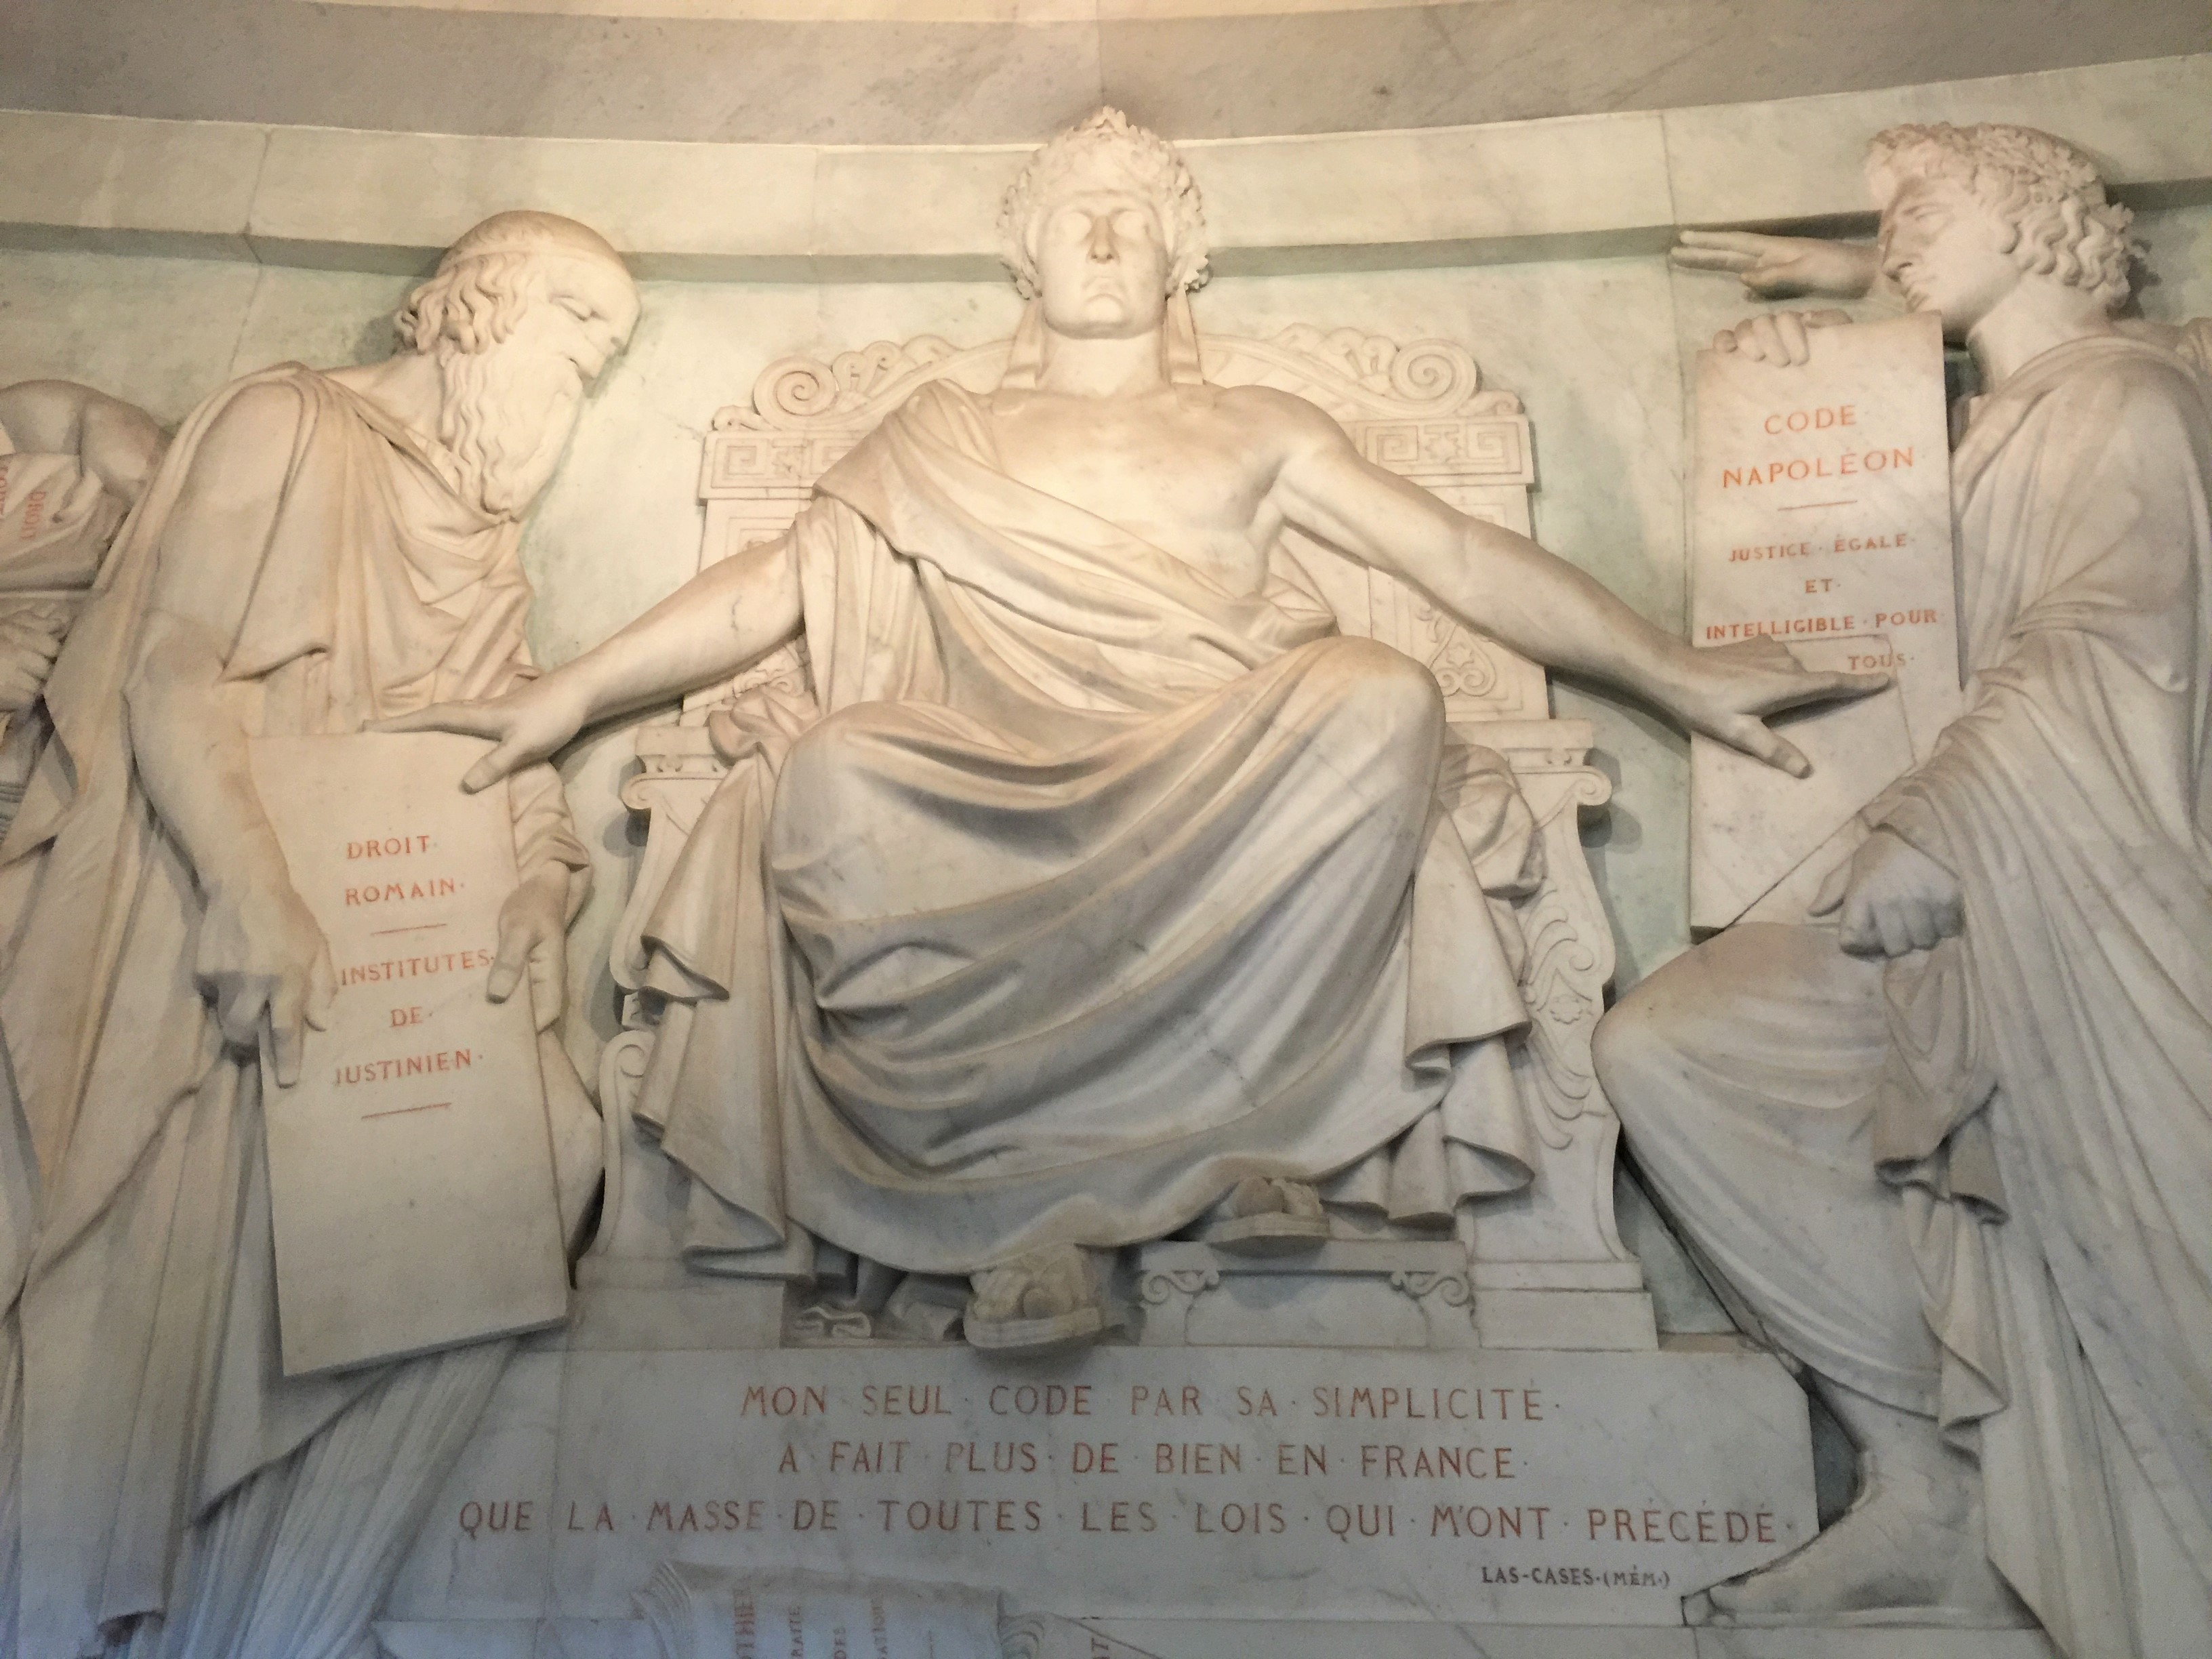 L'immagina raffigura uno dei Bassorilievi nel Dome des Invalides che ricorda le Code Napoléon, Pari